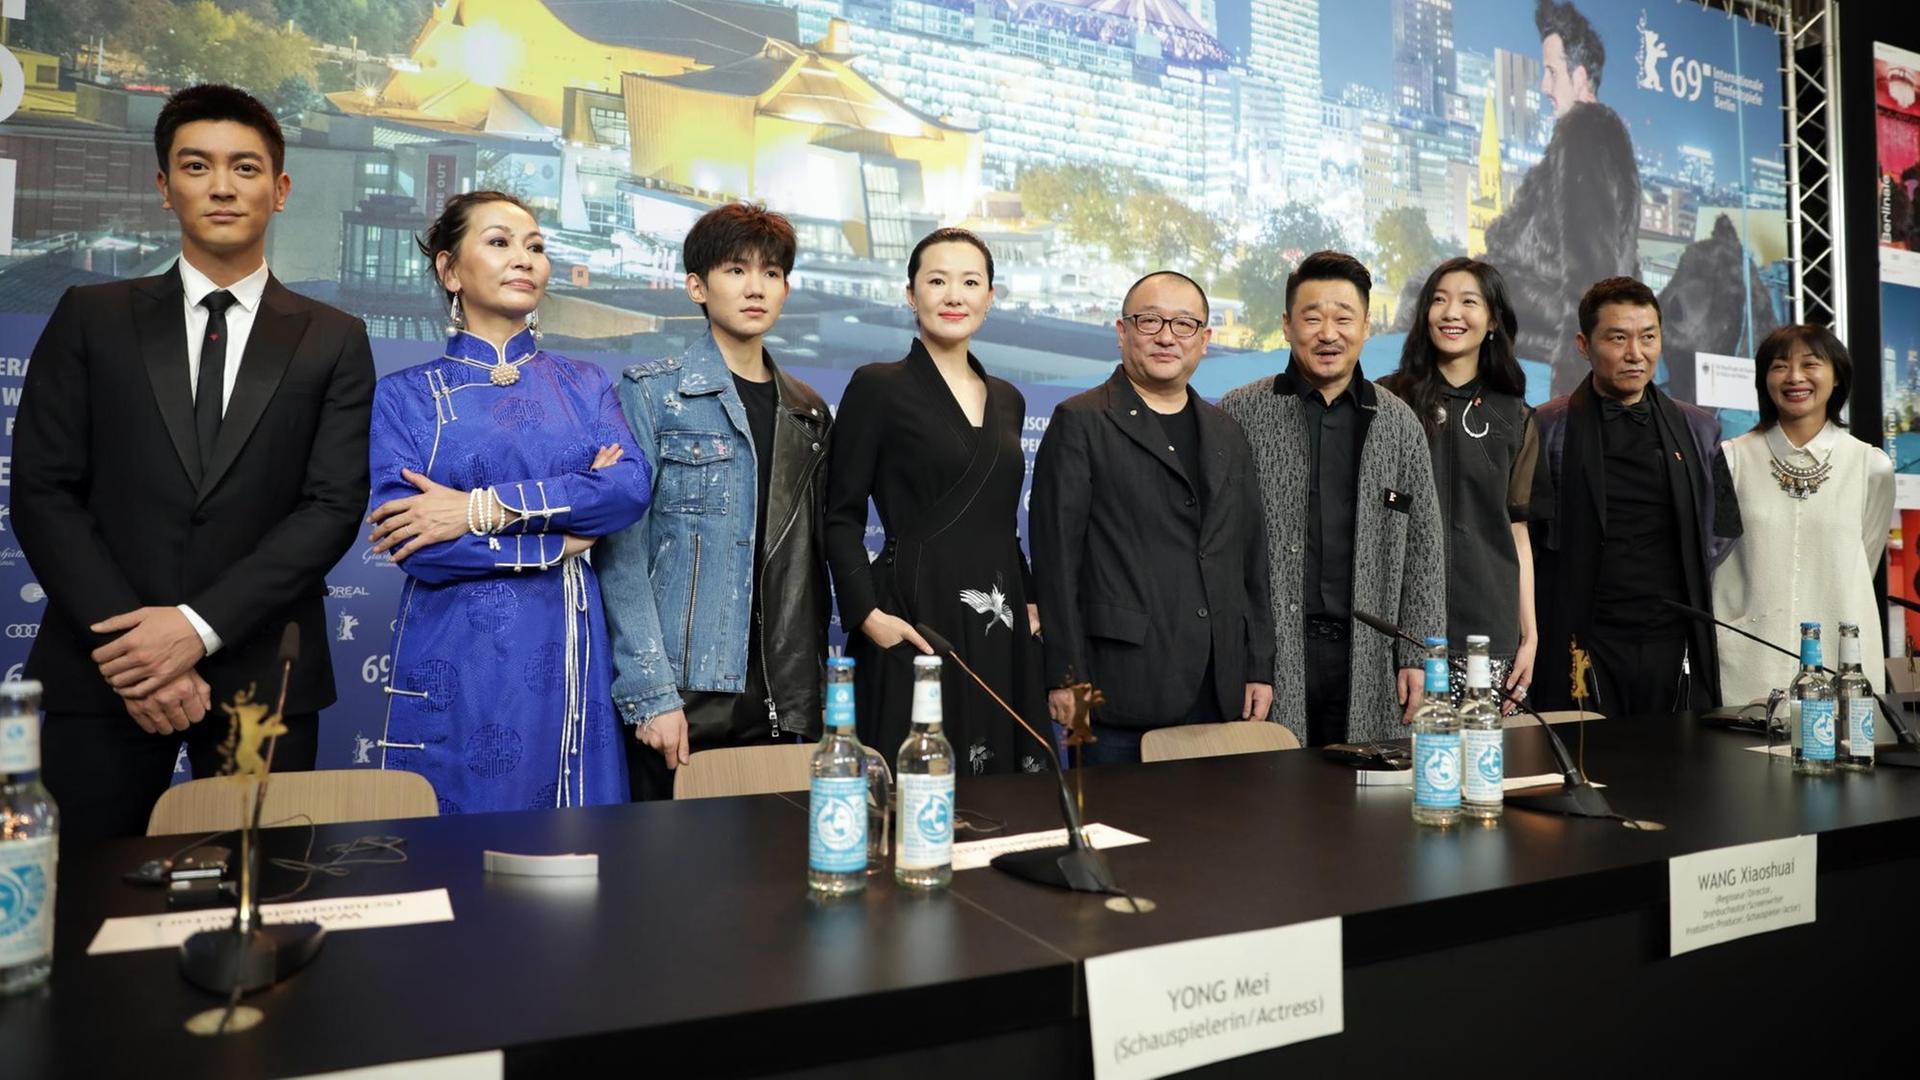 Die Schauspieler Du Jiang, Ailiya, Wang Yuan (l-r), Yong Mei, Wang Xiaoshuai, Regisseur, Wang Jingchun, Qi Xi, Zhao Yanguozhang und Produzentin Liu Xuan auf der Pressekonferenz zu "So long, my son" auf der 69. Berlinale.